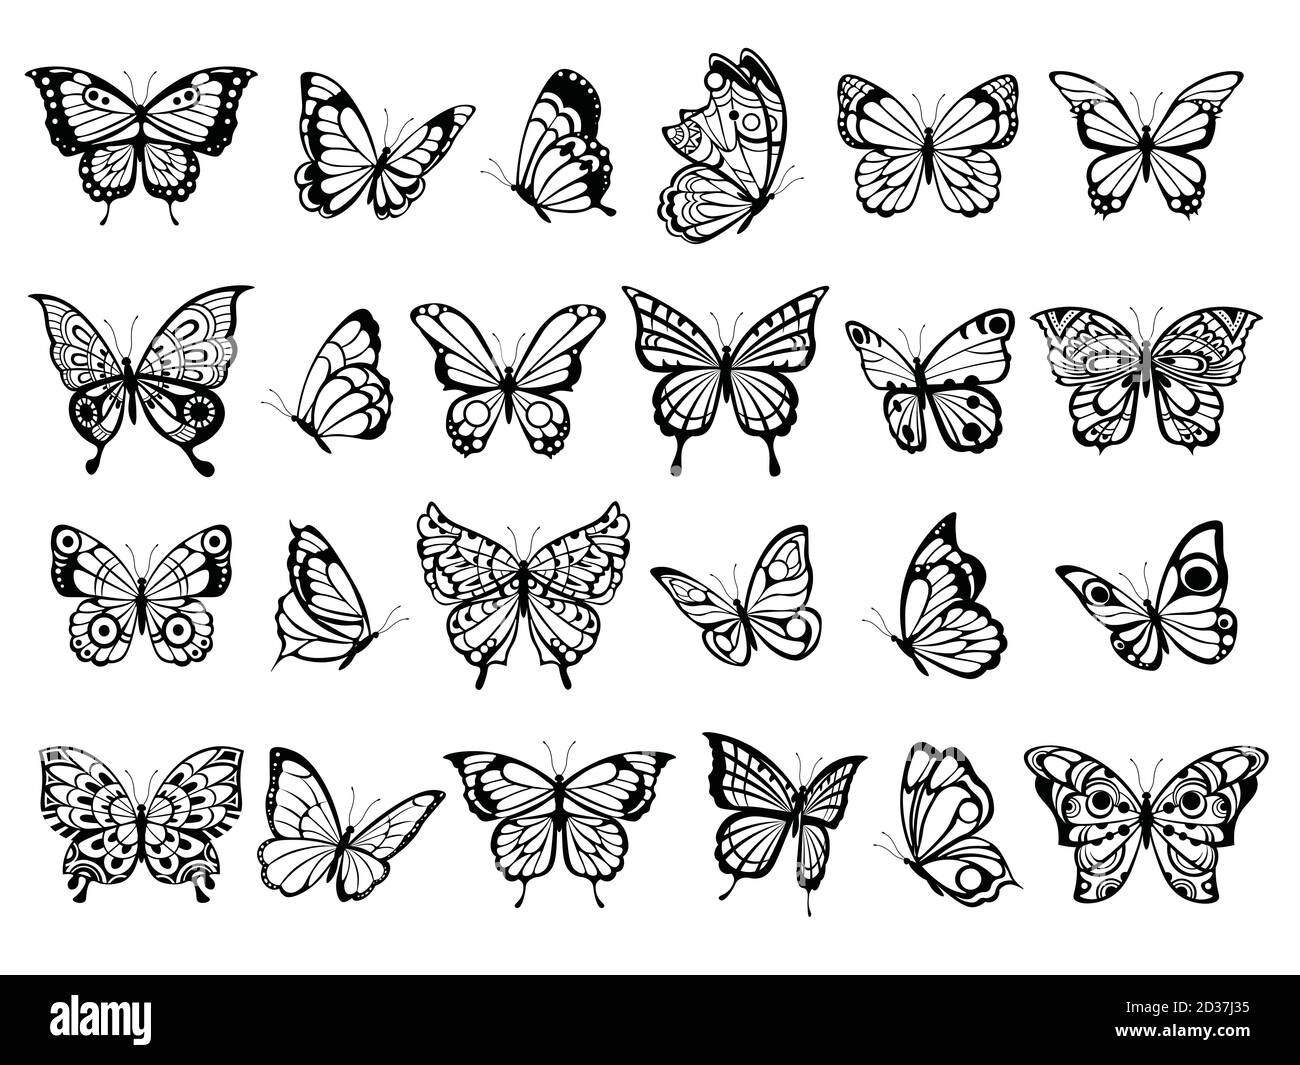 Schmetterlingskollektion. Schöne Natur fliegende Insektenzeichnung, exotische schwarze Schmetterlinge mit lustigen Flügeln Vektorbilder Stock Vektor